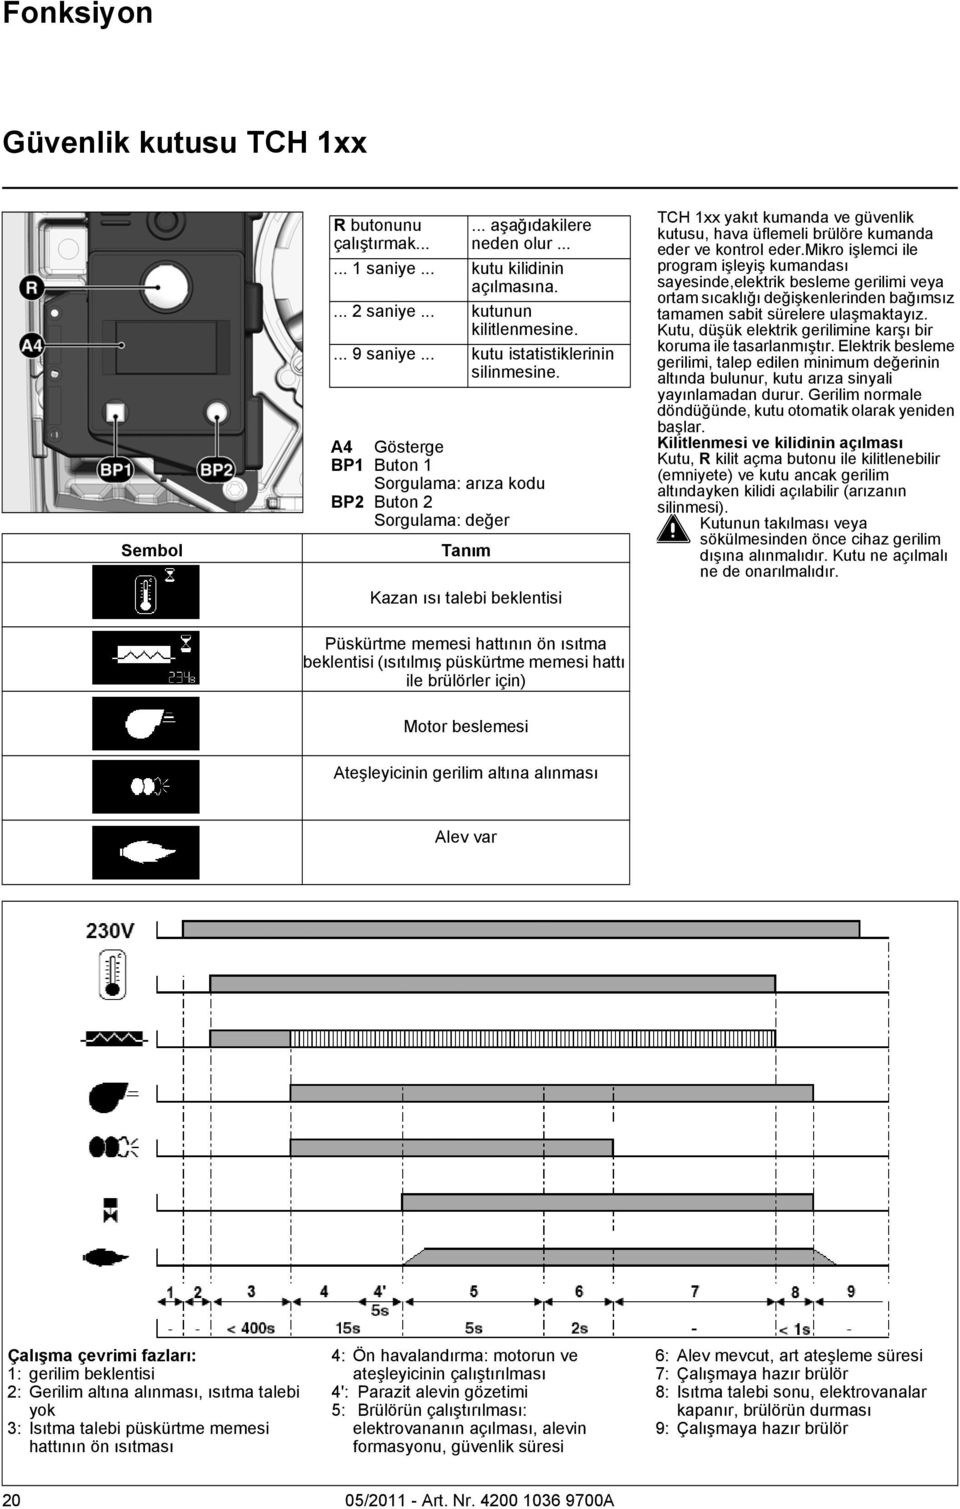 A4 Gösterge BP1 Buton 1 Sorgulama: arıza kodu BP2 Buton 2 Sorgulama: değer Kazan ısı talebi beklentisi TCH 1xx yakıt kumanda ve güvenlik kutusu, hava üflemeli brülöre kumanda eder ve kontrol eder.